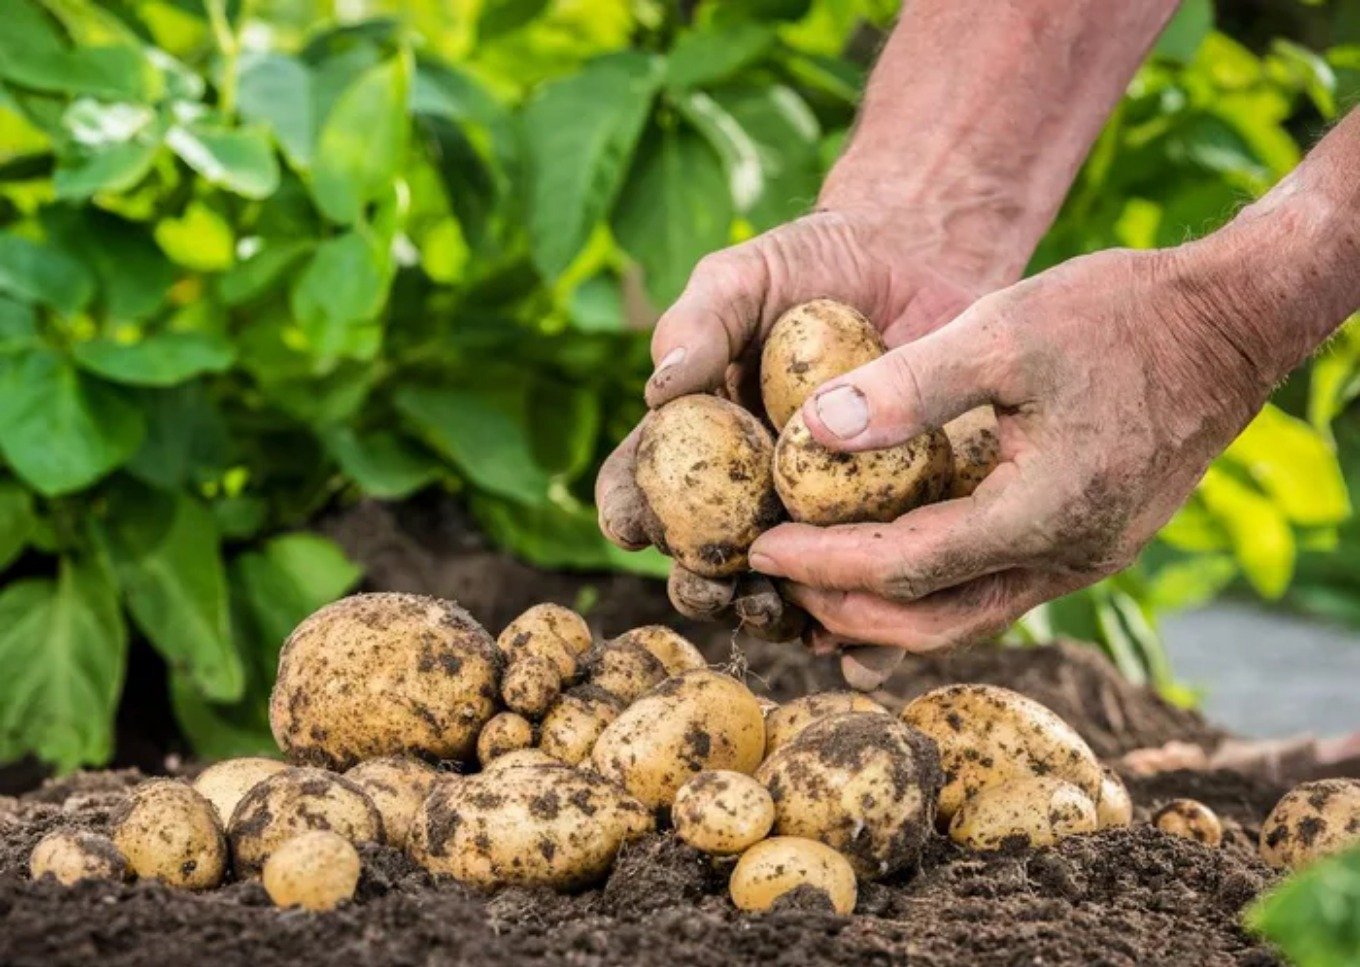 Hướng dẫn bạn cách trồng khoai tȃy cực dễ từ củ mọc mầm - Ảnh 5.